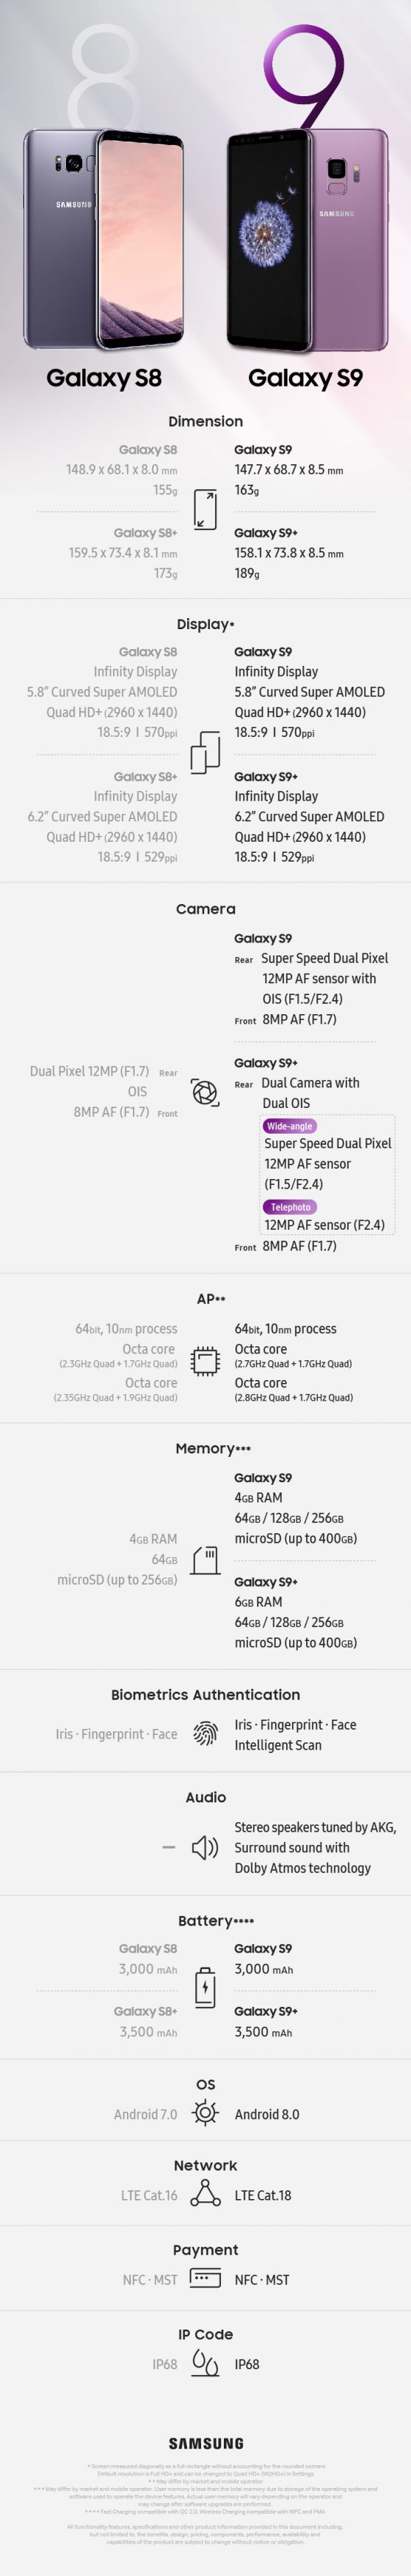 Samsung Galaxy S9 specyfikacja